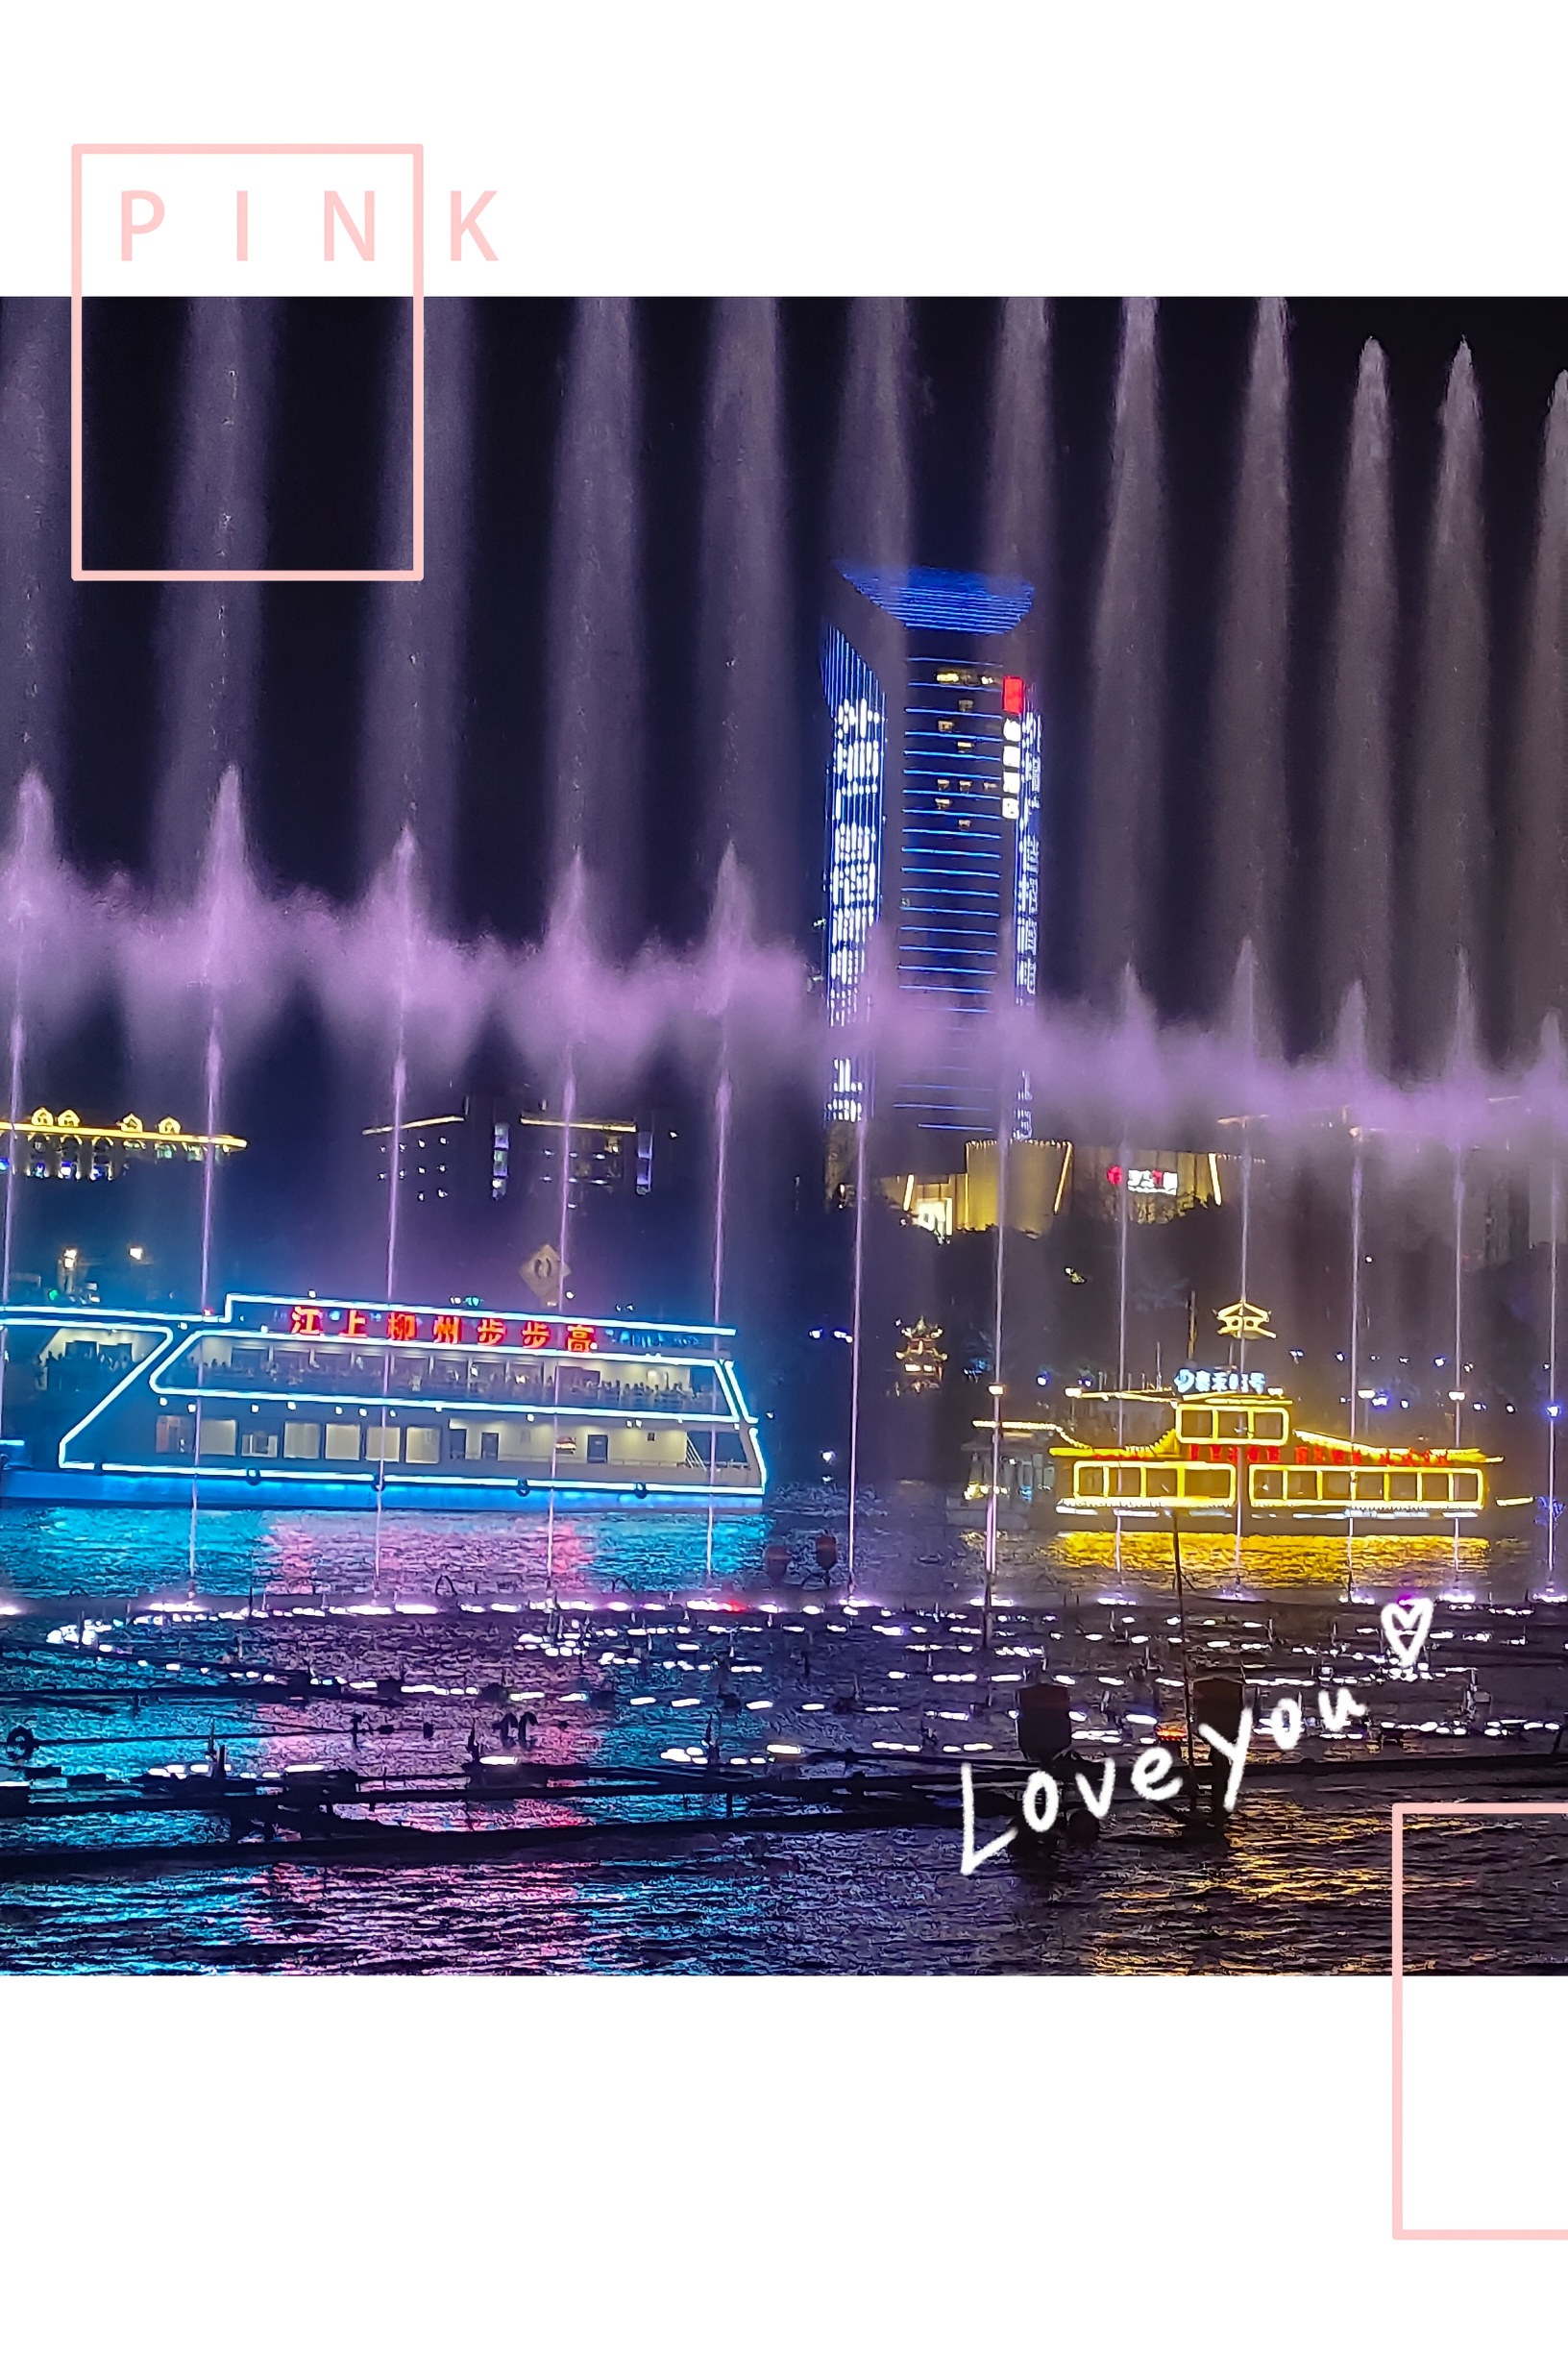 柳州音乐🎶喷泉⛲留恋忘返❤️